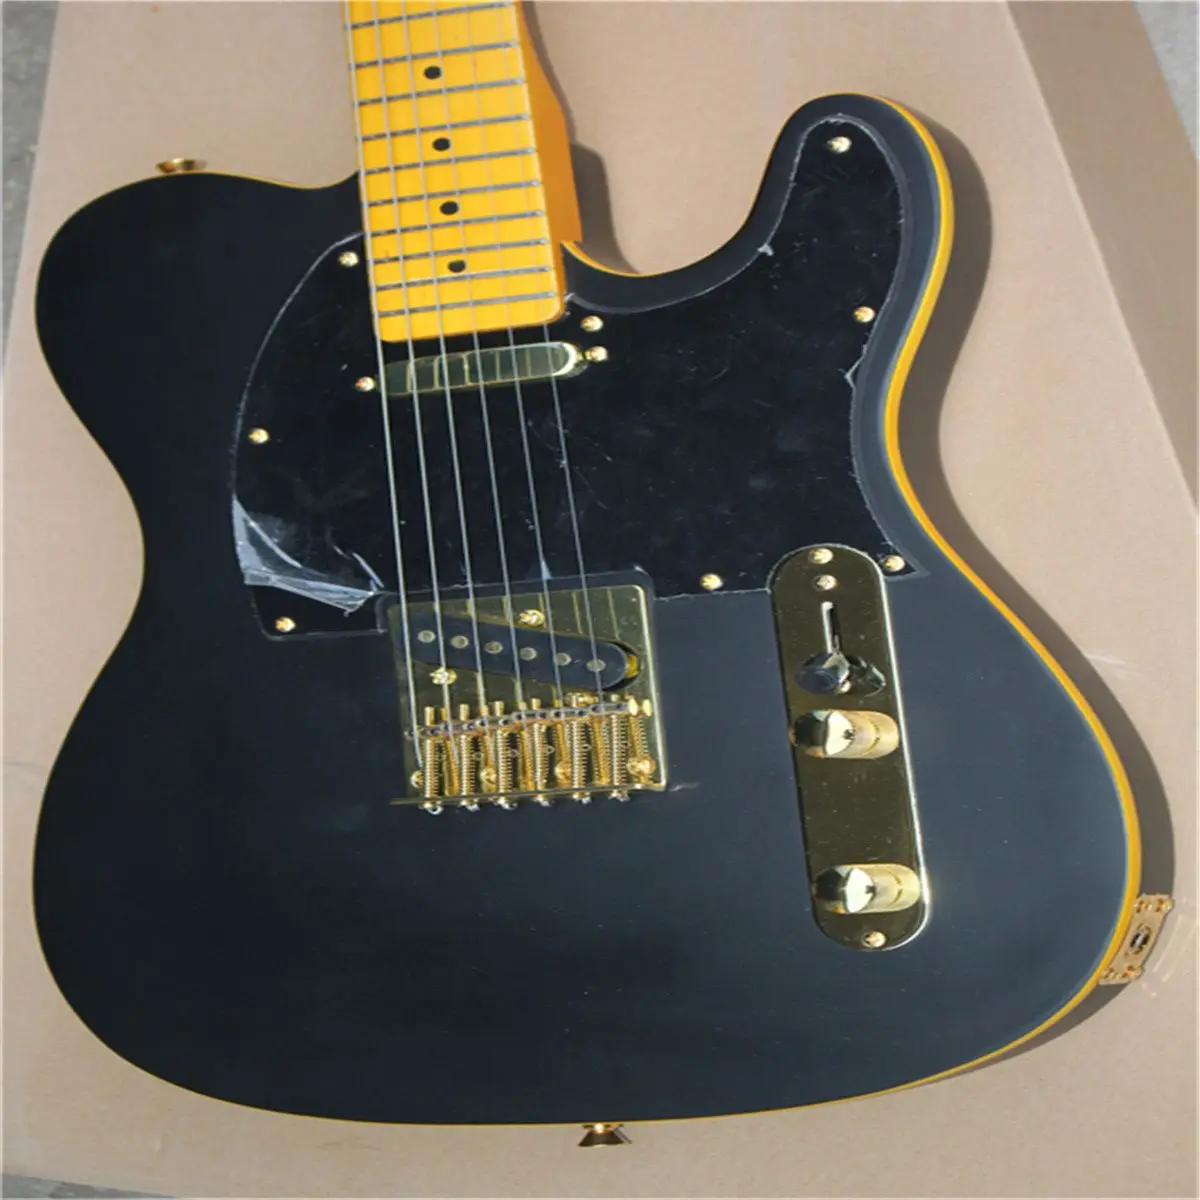 

Классическая электрическая гитара, стиль TL, корпус из липы, Кленовая шея, черная матовая краска, пользовательская гитара, бесплатно